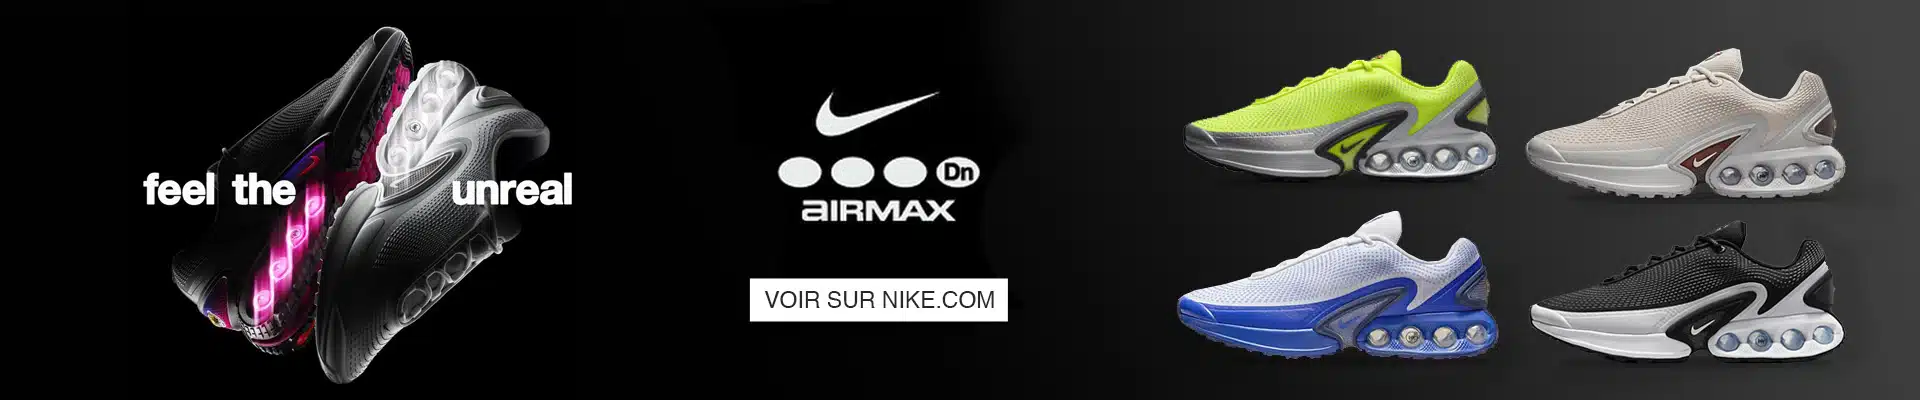 Nike Air Max Dn